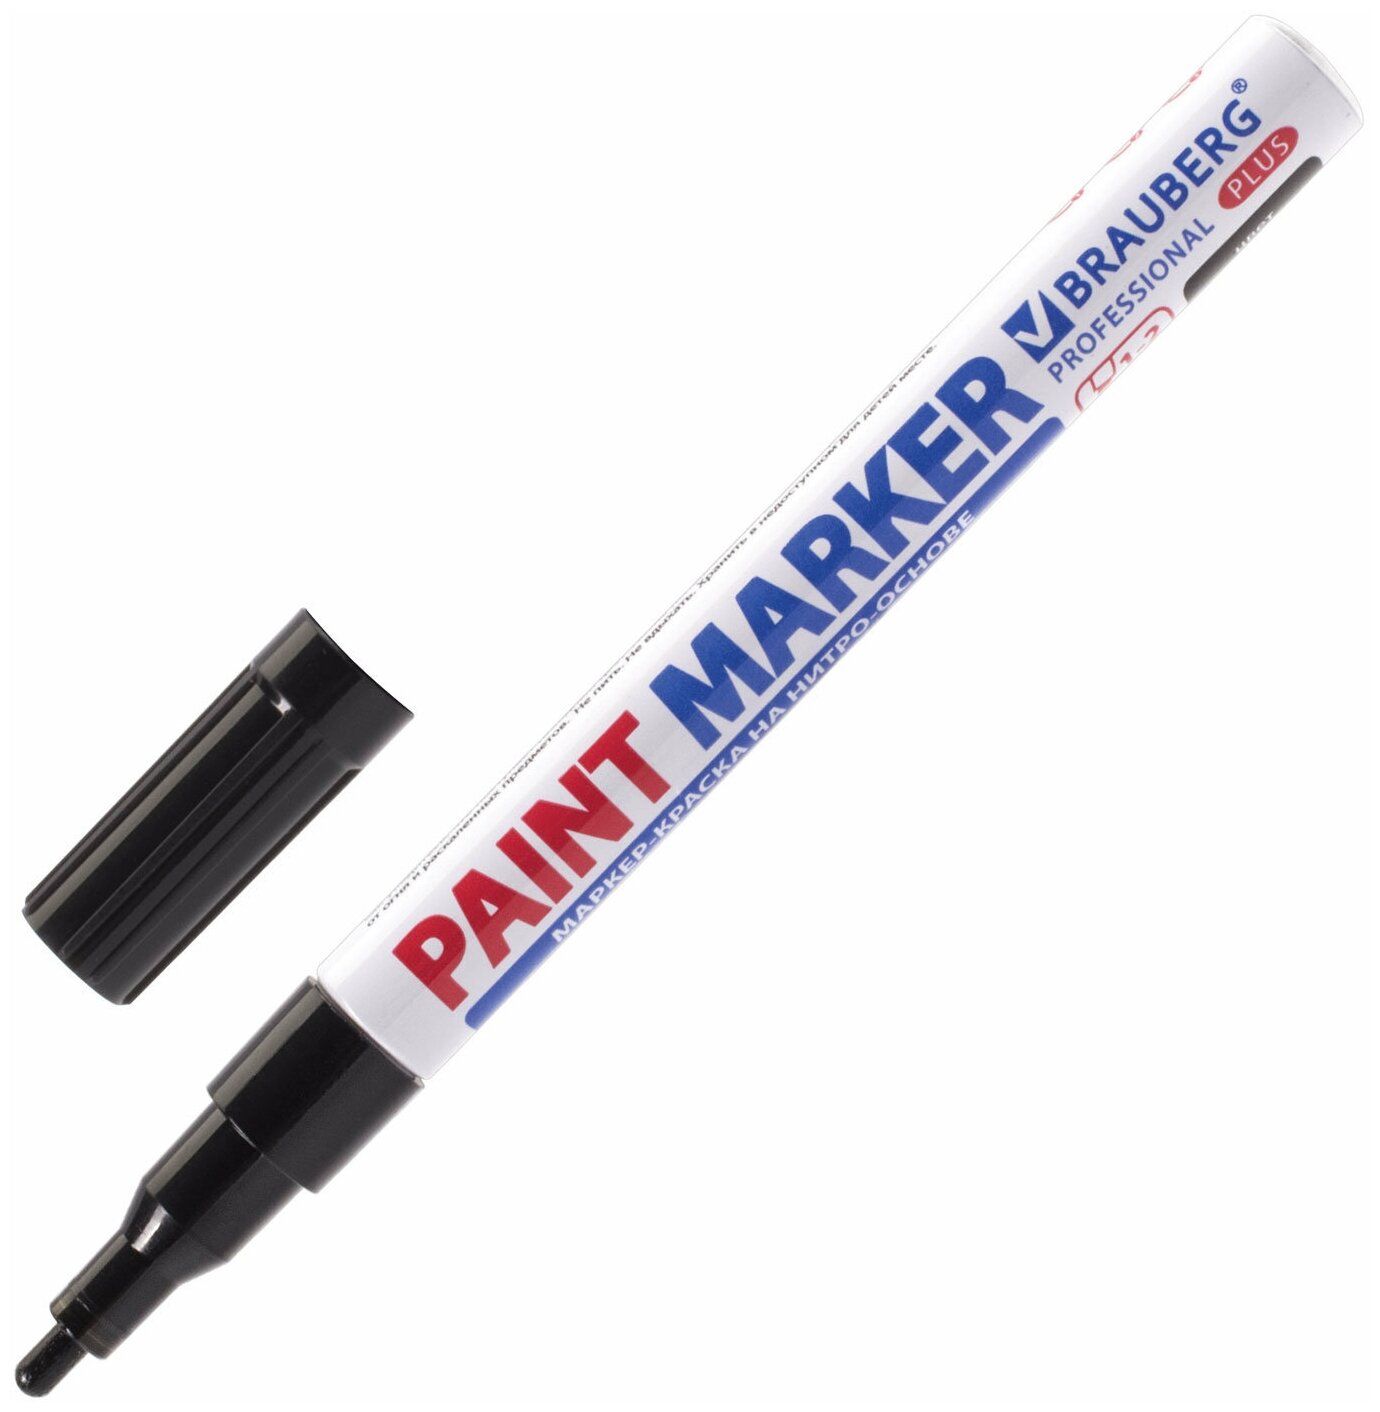 Маркер краска лаковый paint marker 2 мм строительный черный, фломастер, нитро основа, алюминиевый корпус, Brauberg Proffessional Plus, 151439